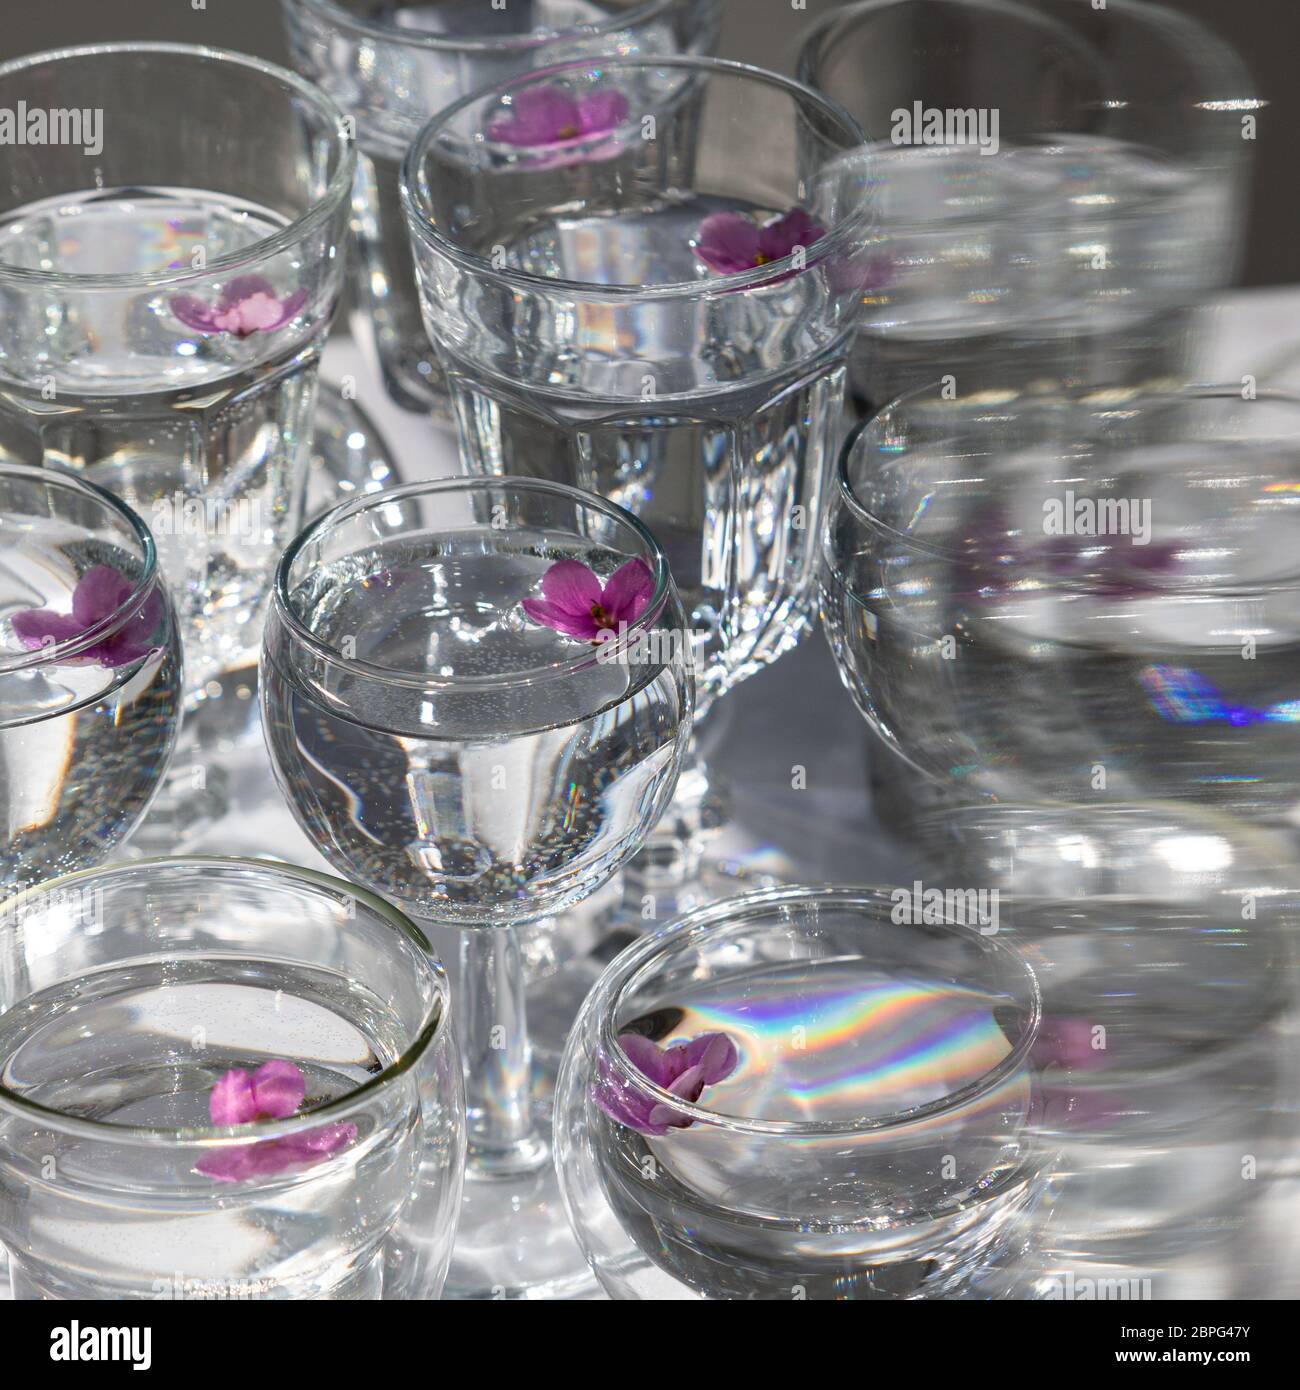 Vue de dessus de verres transparents et de lunettes de vin avec de l'eau et de petites fleurs violettes à l'intérieur, mise au point sélective. Lumière du soleil. Banque D'Images